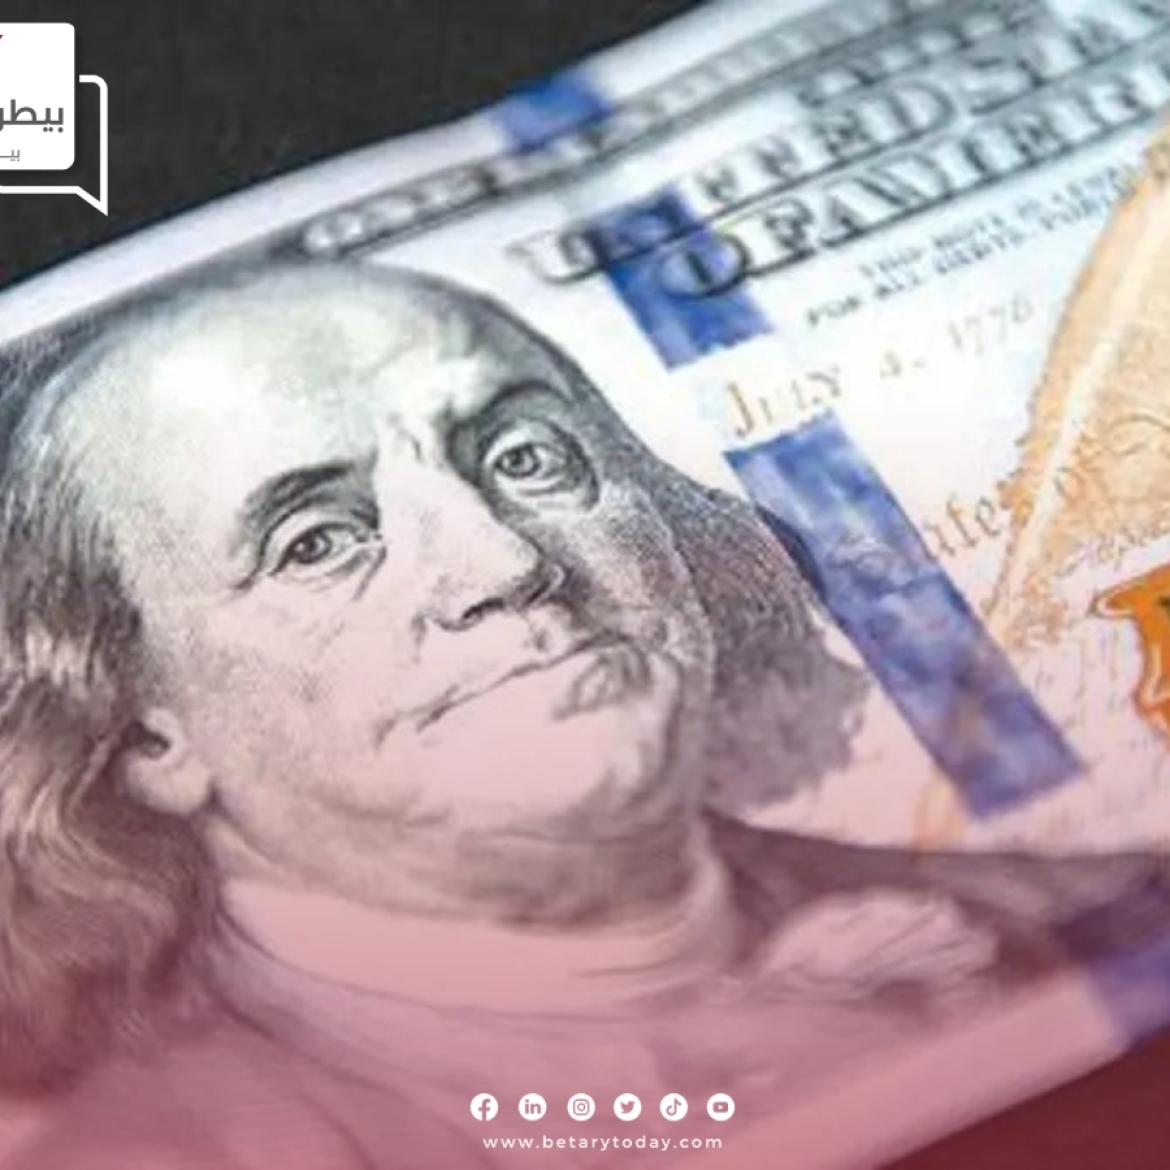 العملة الدولارية الأمريكية تتراجع مقابل ست عملات أخرى في البنوك المصرية اليوم الثلاثاء